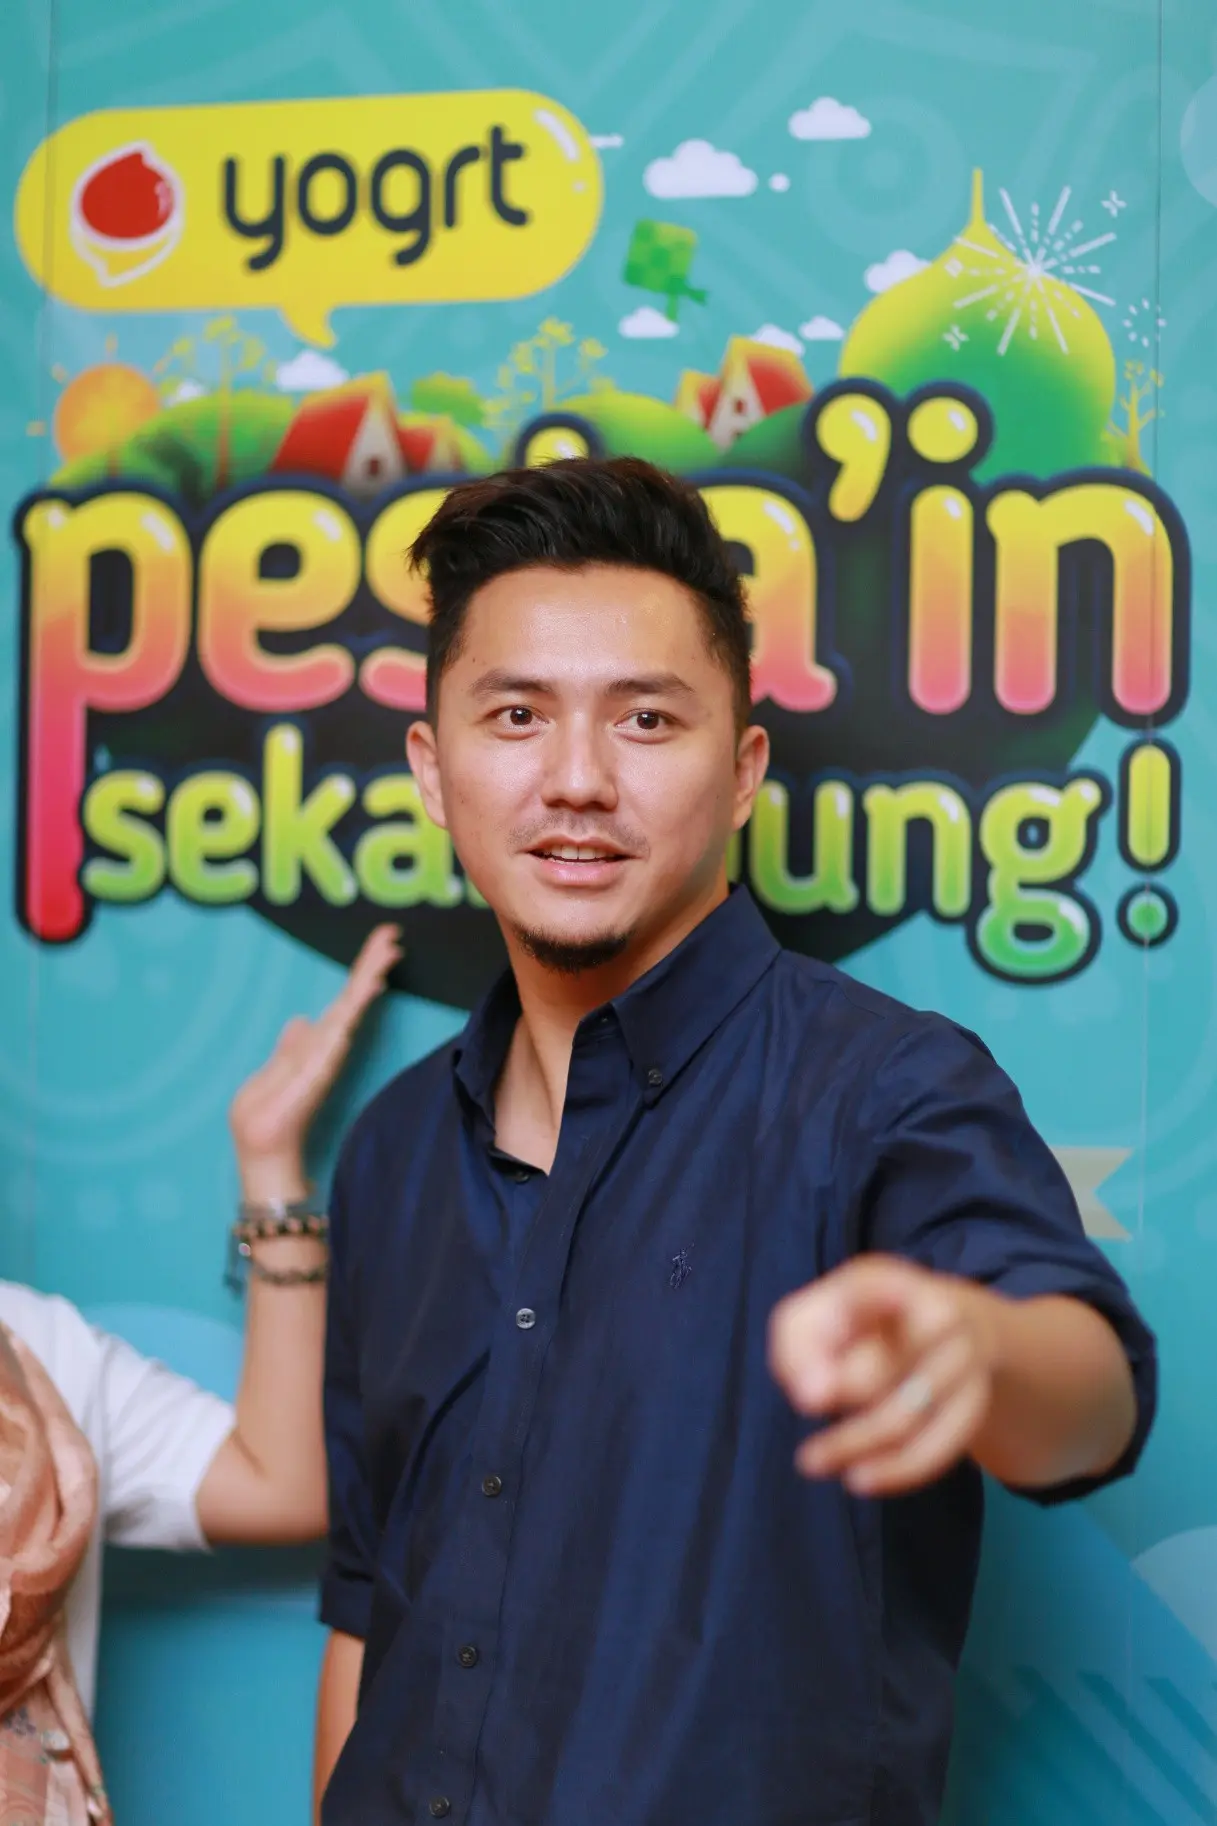 Mengurangi kegiatan selama Ramadan sudah dilakukan oleh presenter dan pemeran dua tahun belakangan ini. Hanya menjadi bintang tamu yang diambil. (Adrian Putra/Bintang.com)